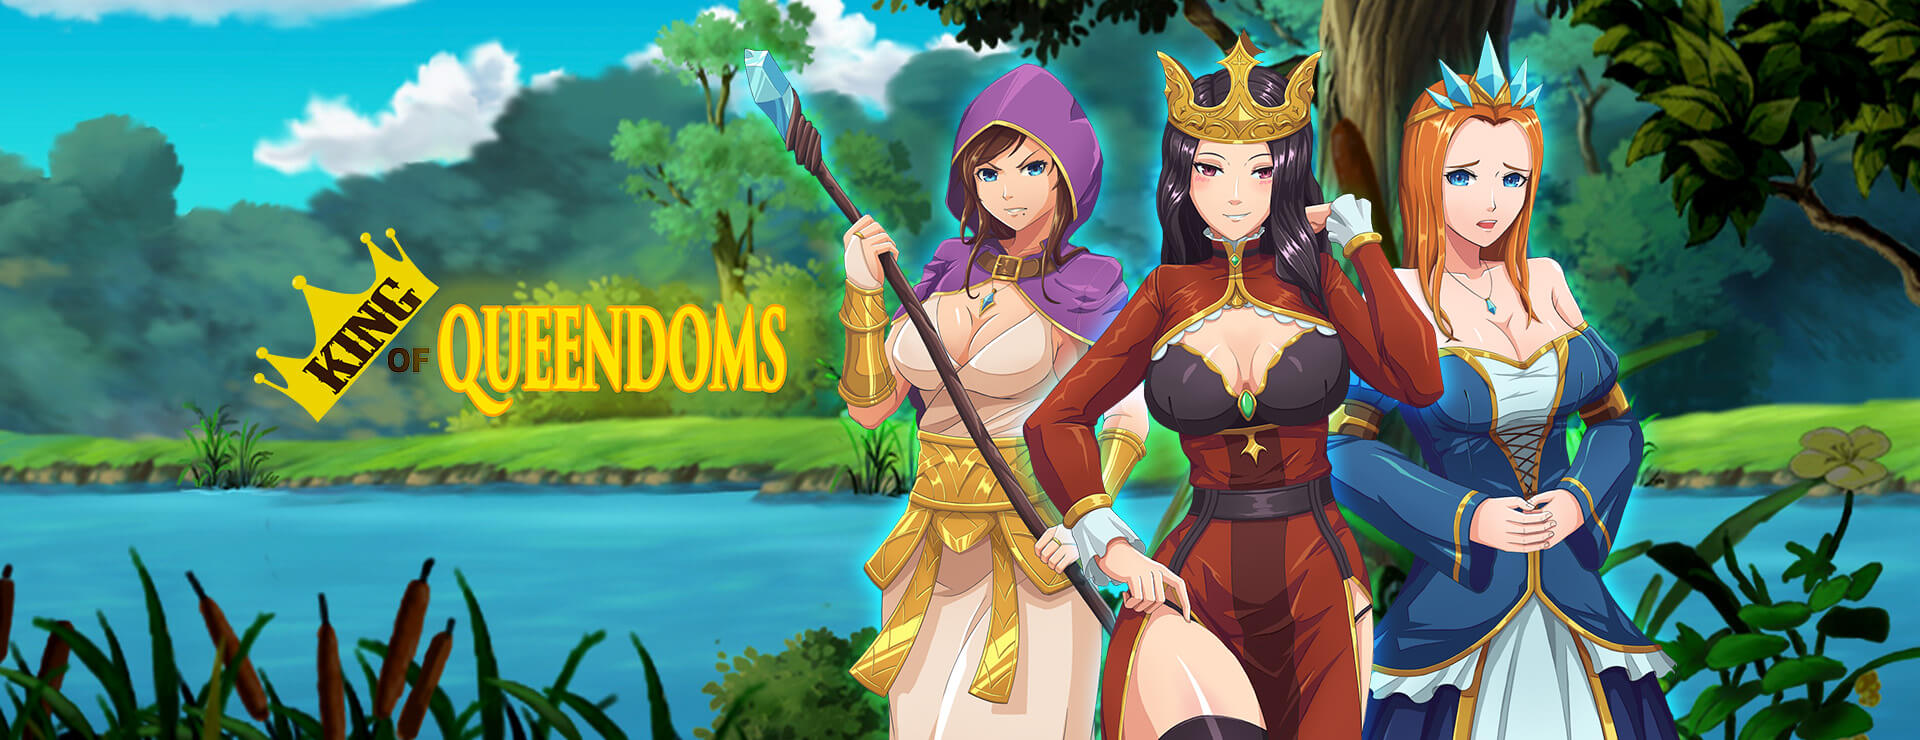 King of Queendoms - 虚拟小说 遊戲